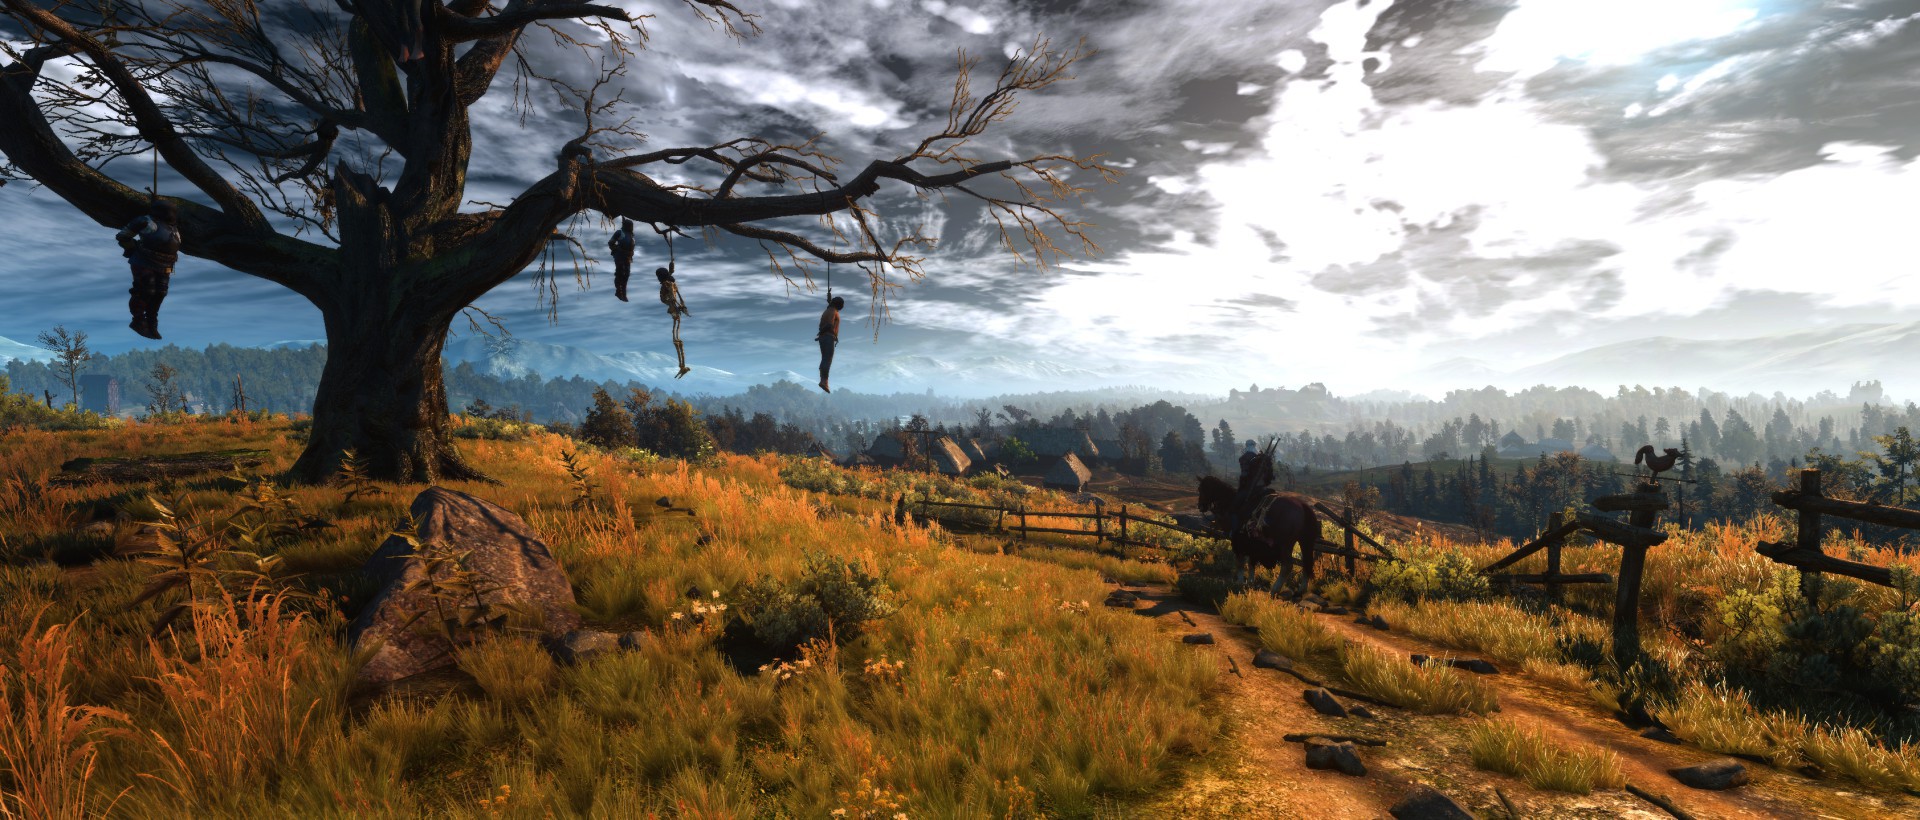 《巫师3》画面增强新mod 让游戏画质达到新高度